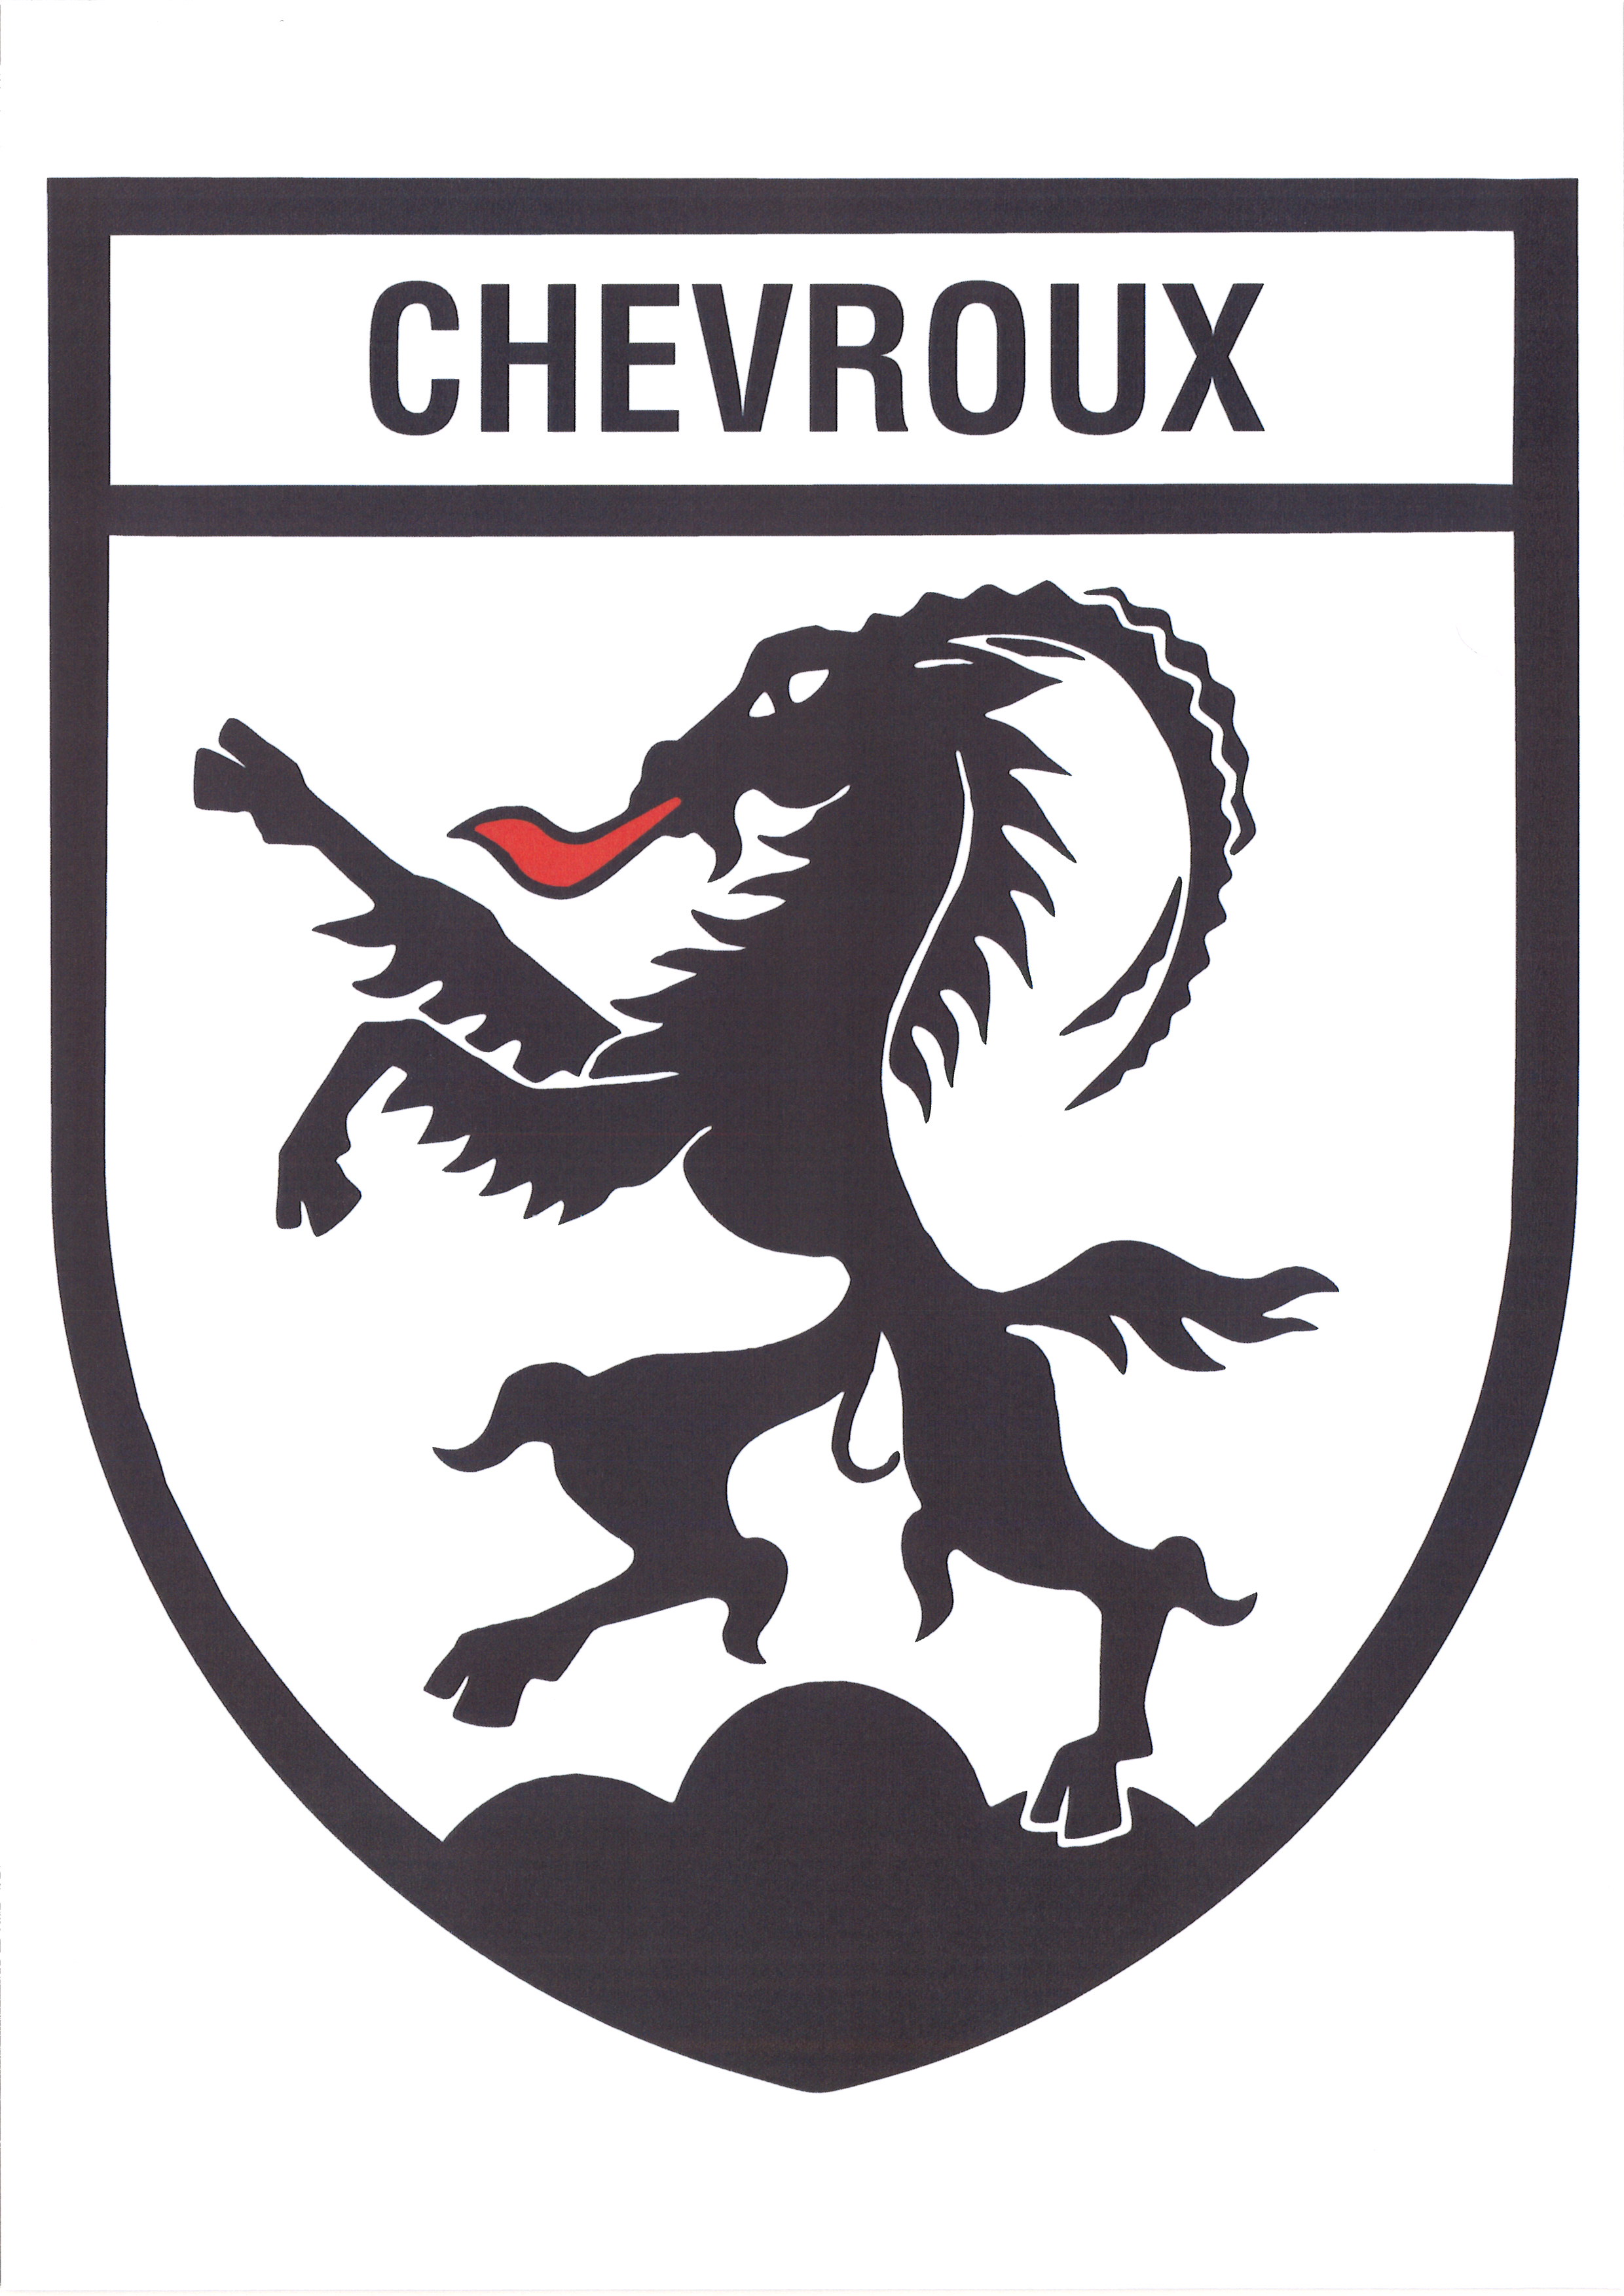 Chevroux